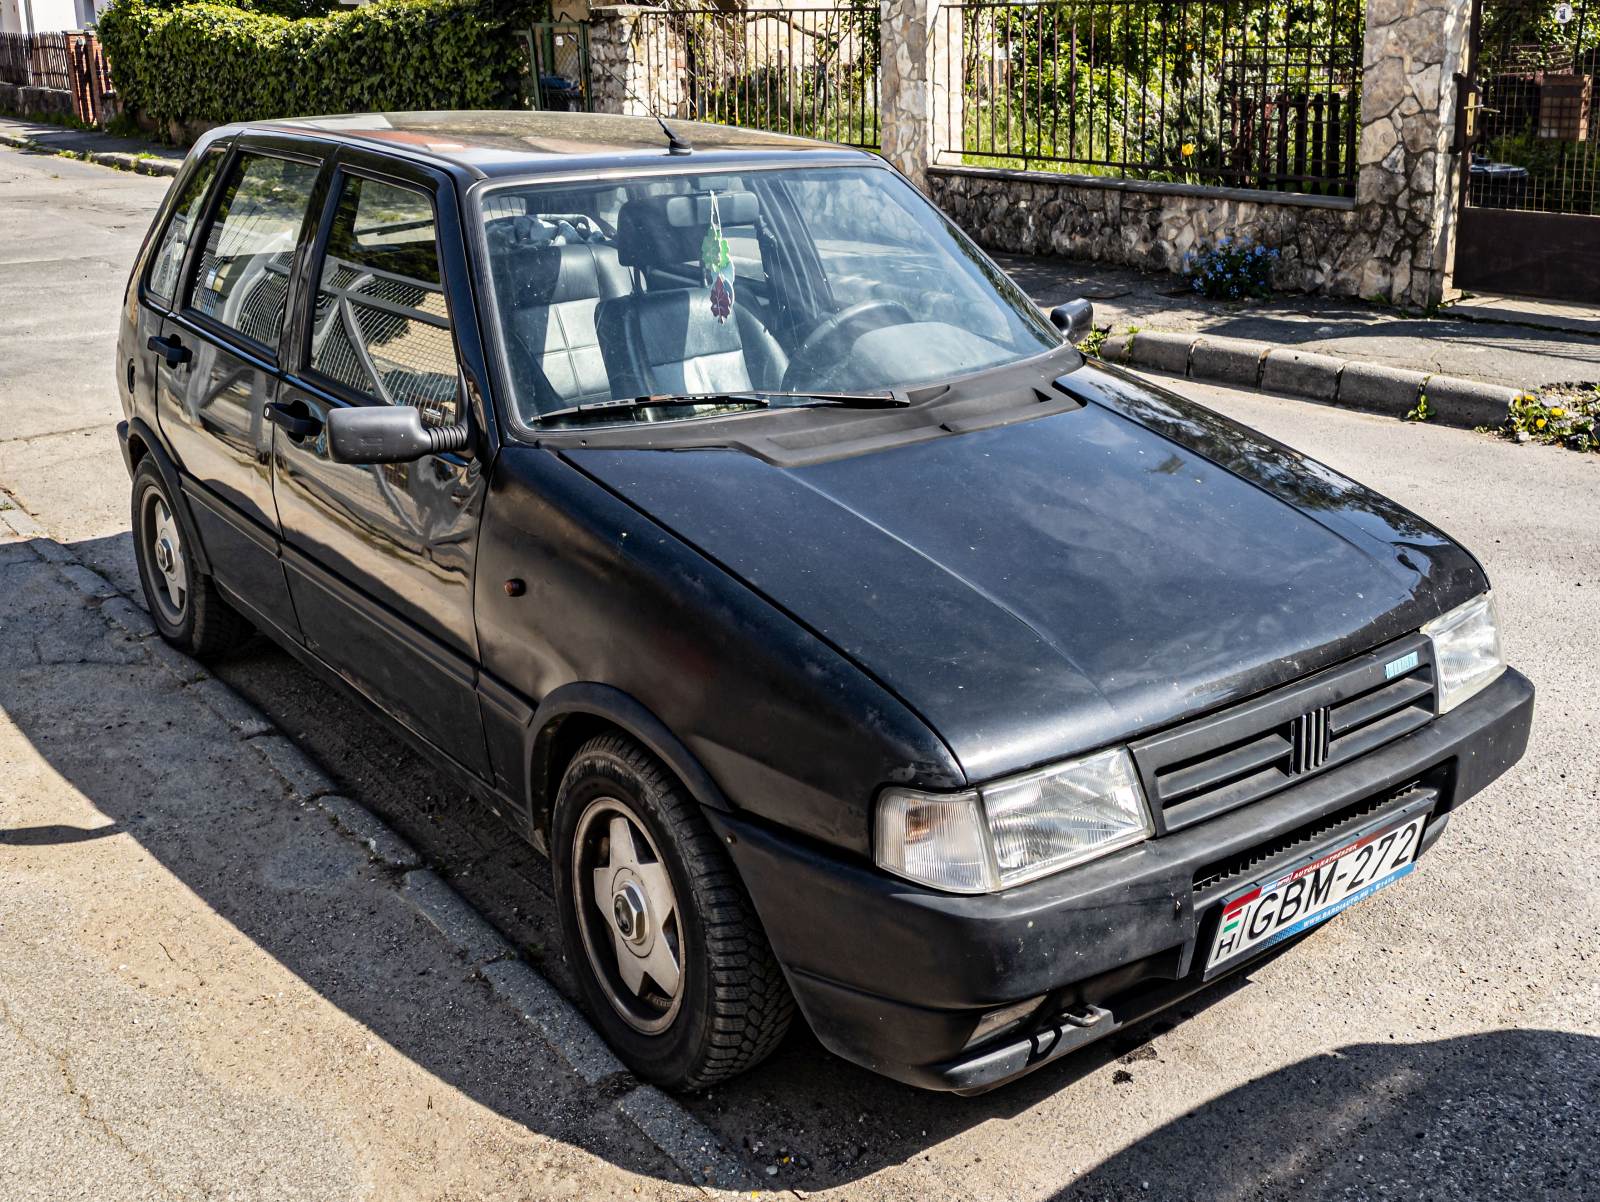 Diesen Fiat Uno Facelift habe ich in Mai, 2022 aufgenommen.